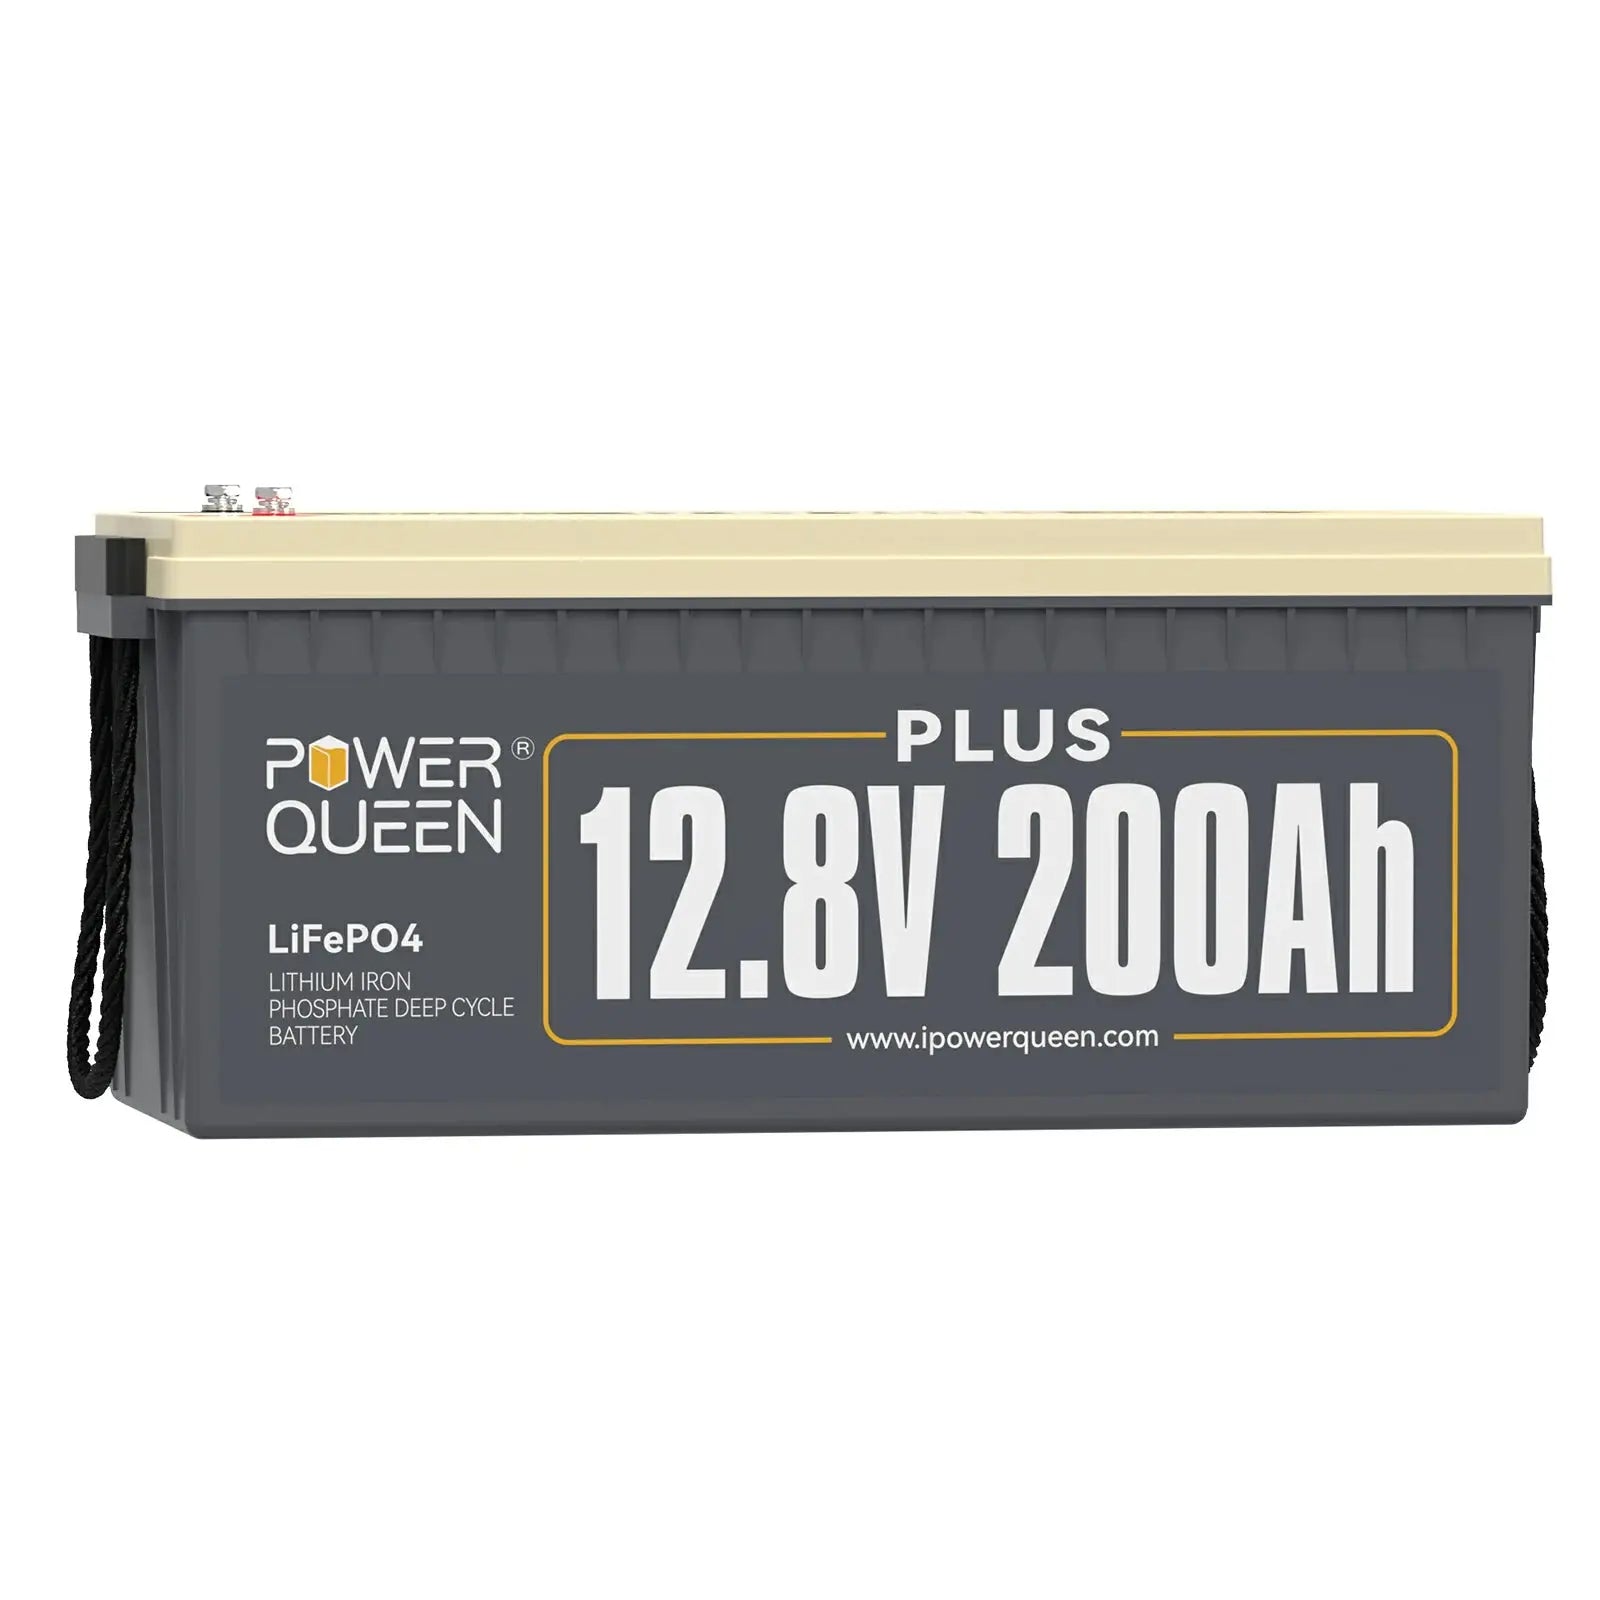 power queen Batería LiFePO4 de 12 V 200 Ah Plus, batería de litio de 2560  Wh integrada de 200 A BMS, 4000 a 15000 ciclos, batería de reserva en caso